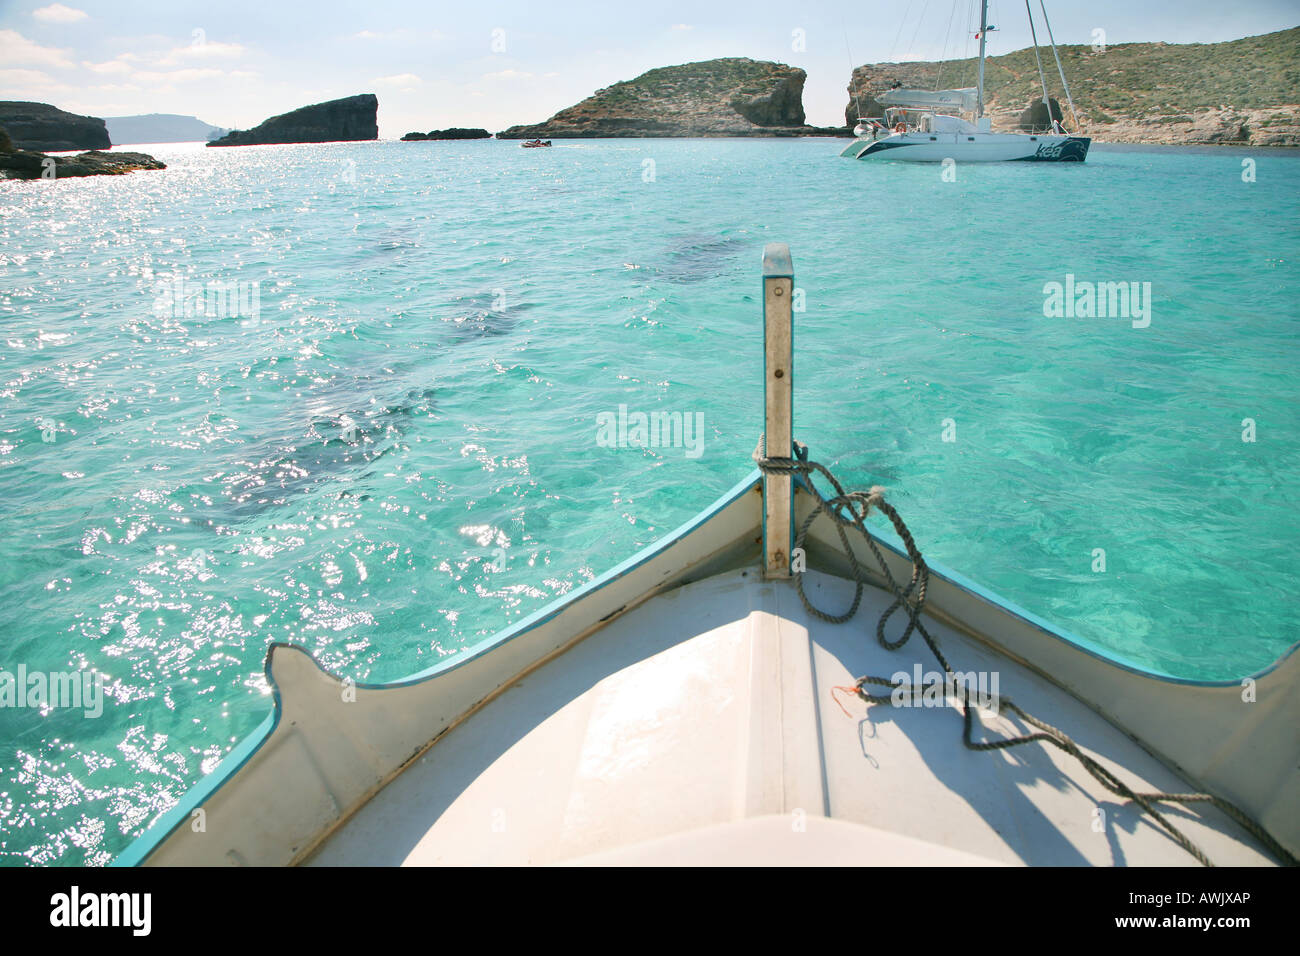 The blue Lagoon in Comino Island Malta Stock Photo